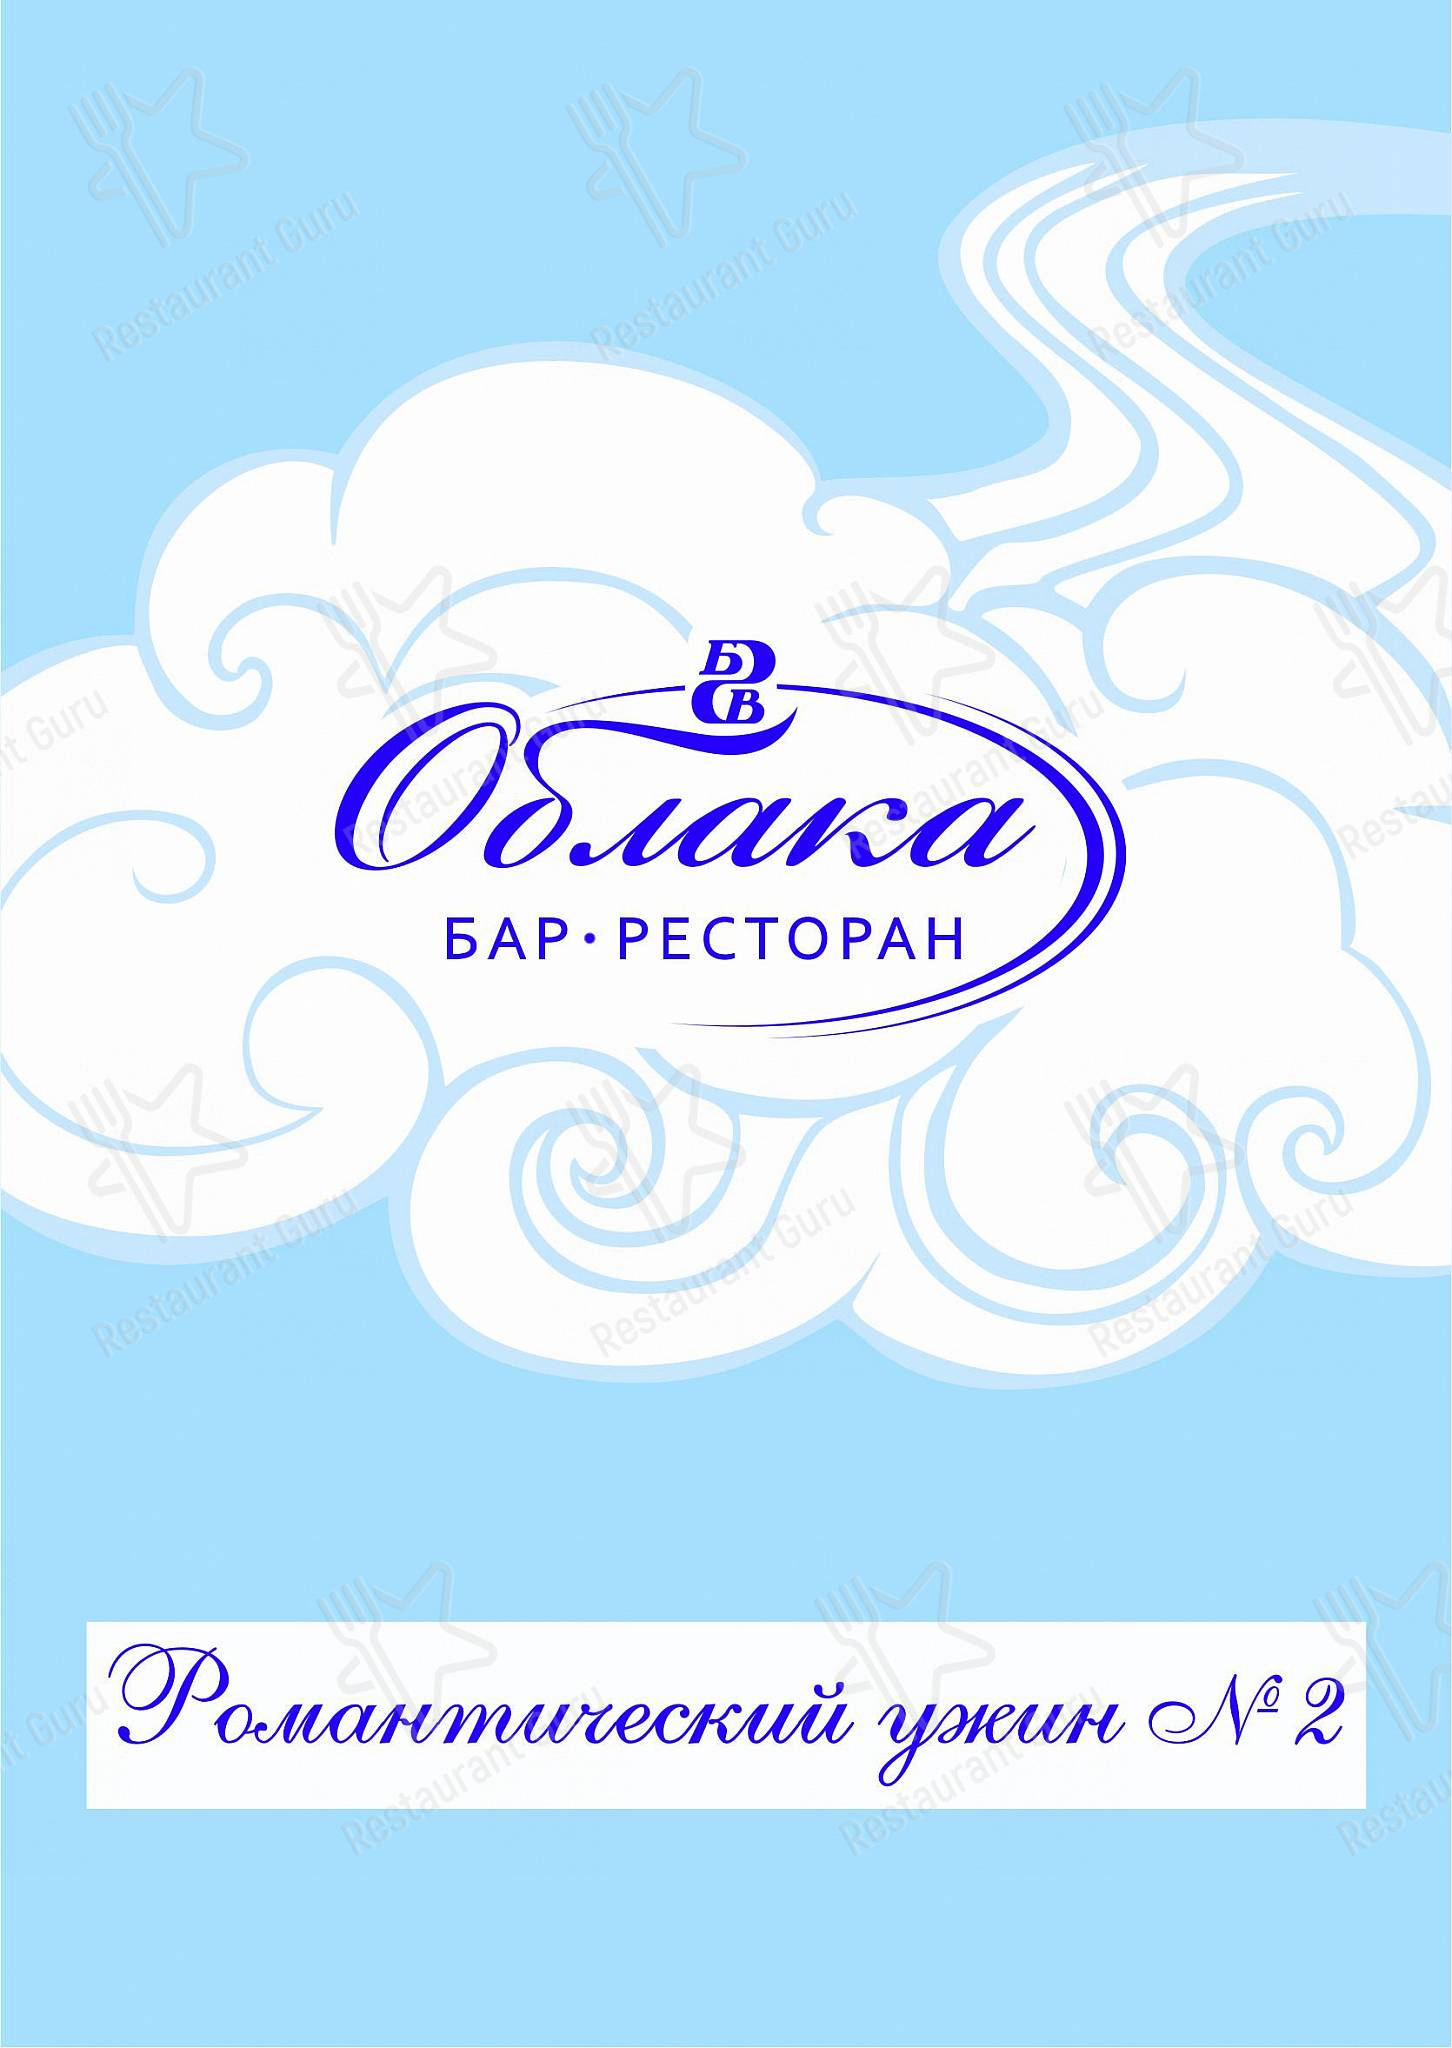 Кафе облака Челябинск. Ресторан облака Челябинск бассейн.